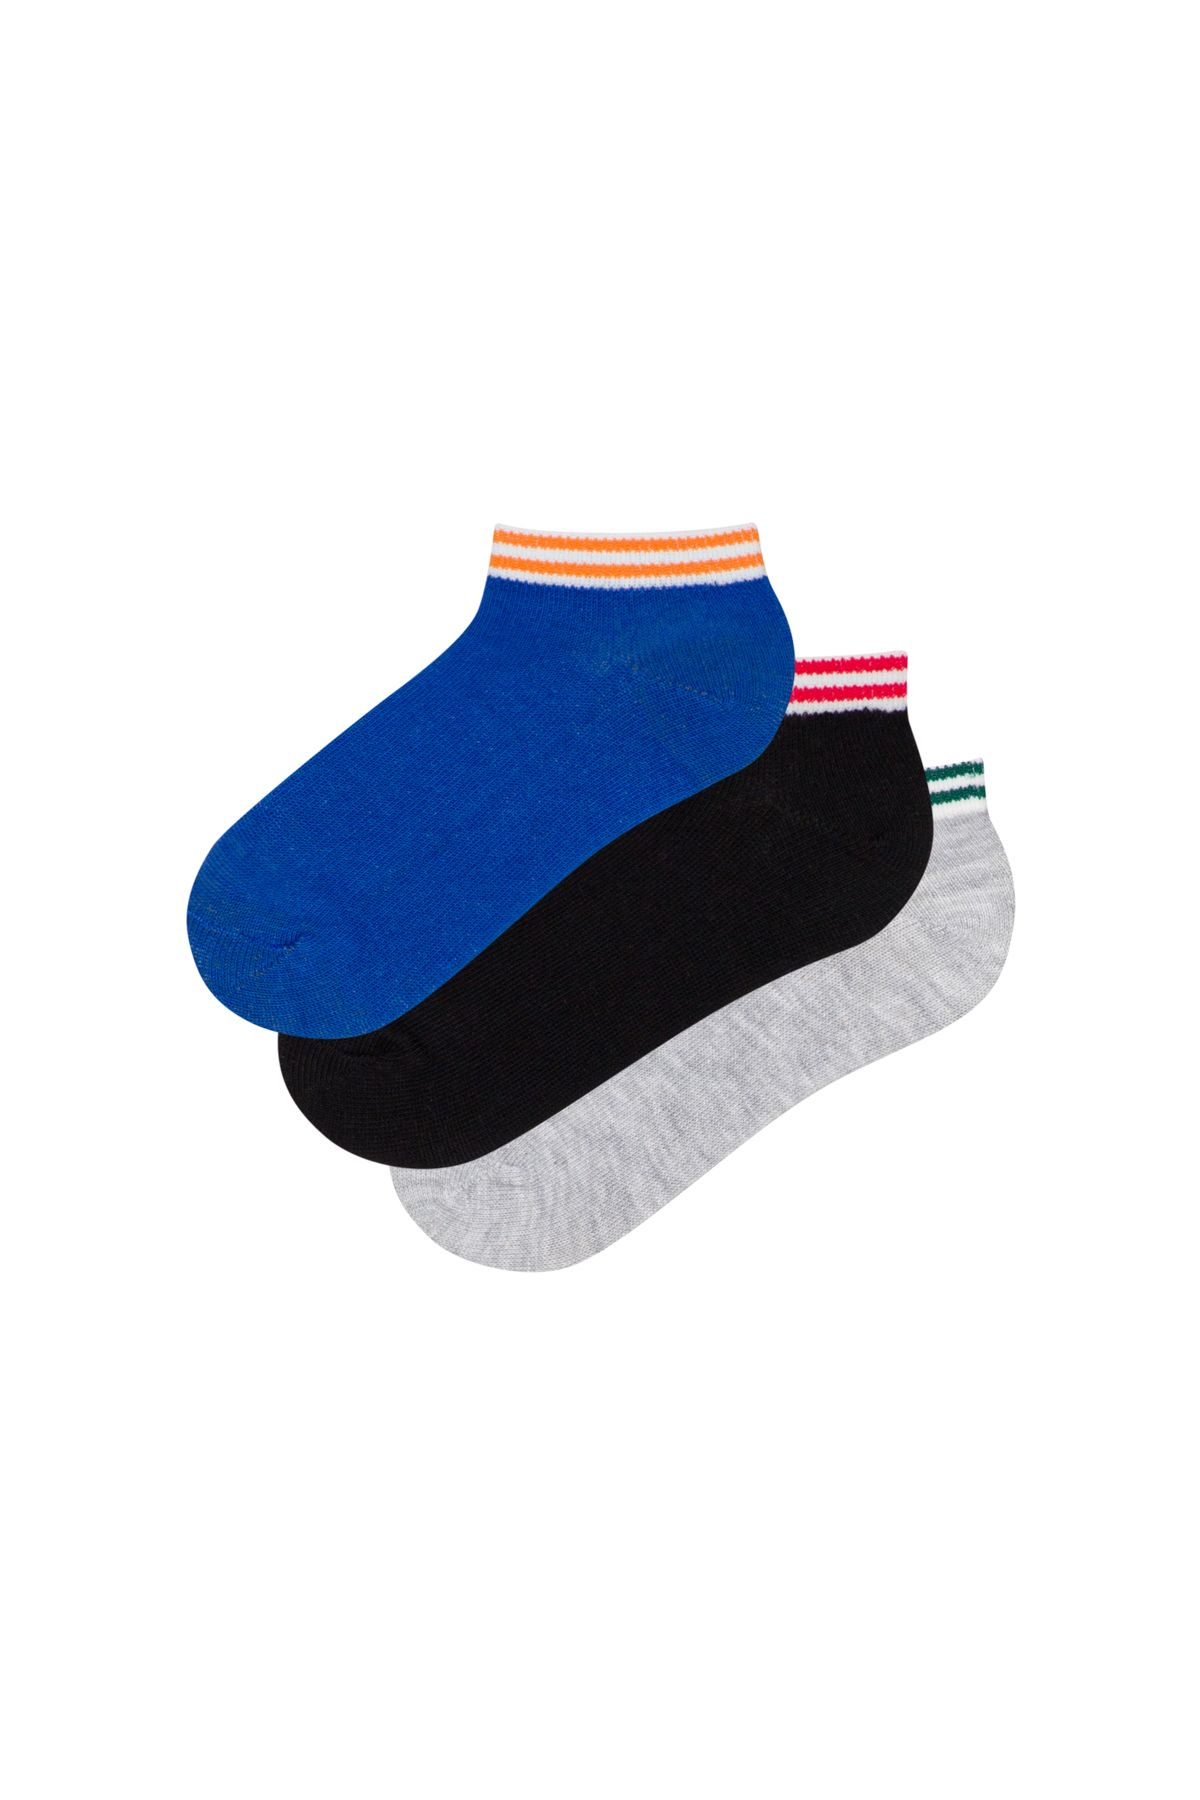 Penti Erkek Çocuk Coolboy 3lü Patik Çorabı